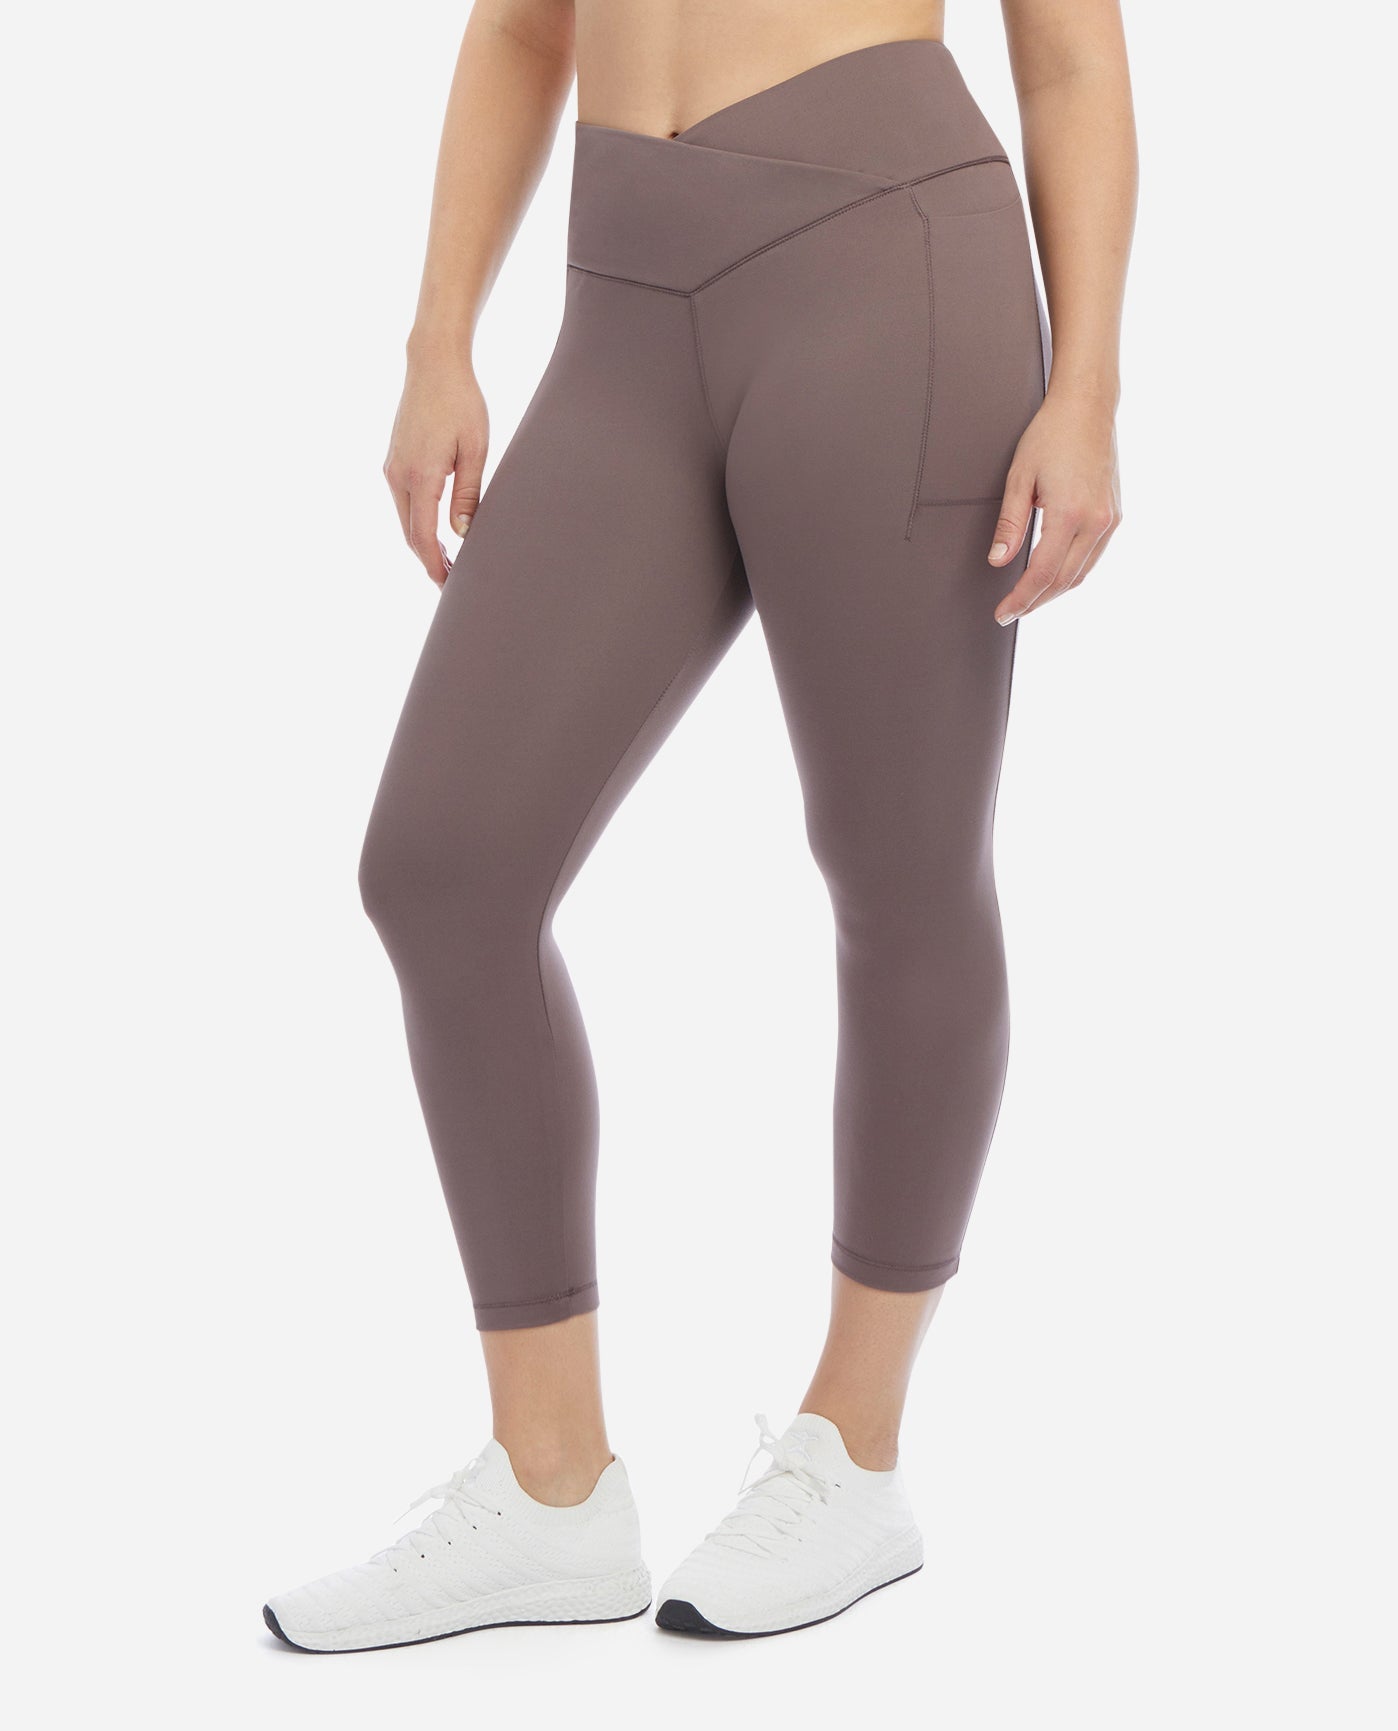 Danskin Now women's medium fitted athletic leggings - $9 - From Megan